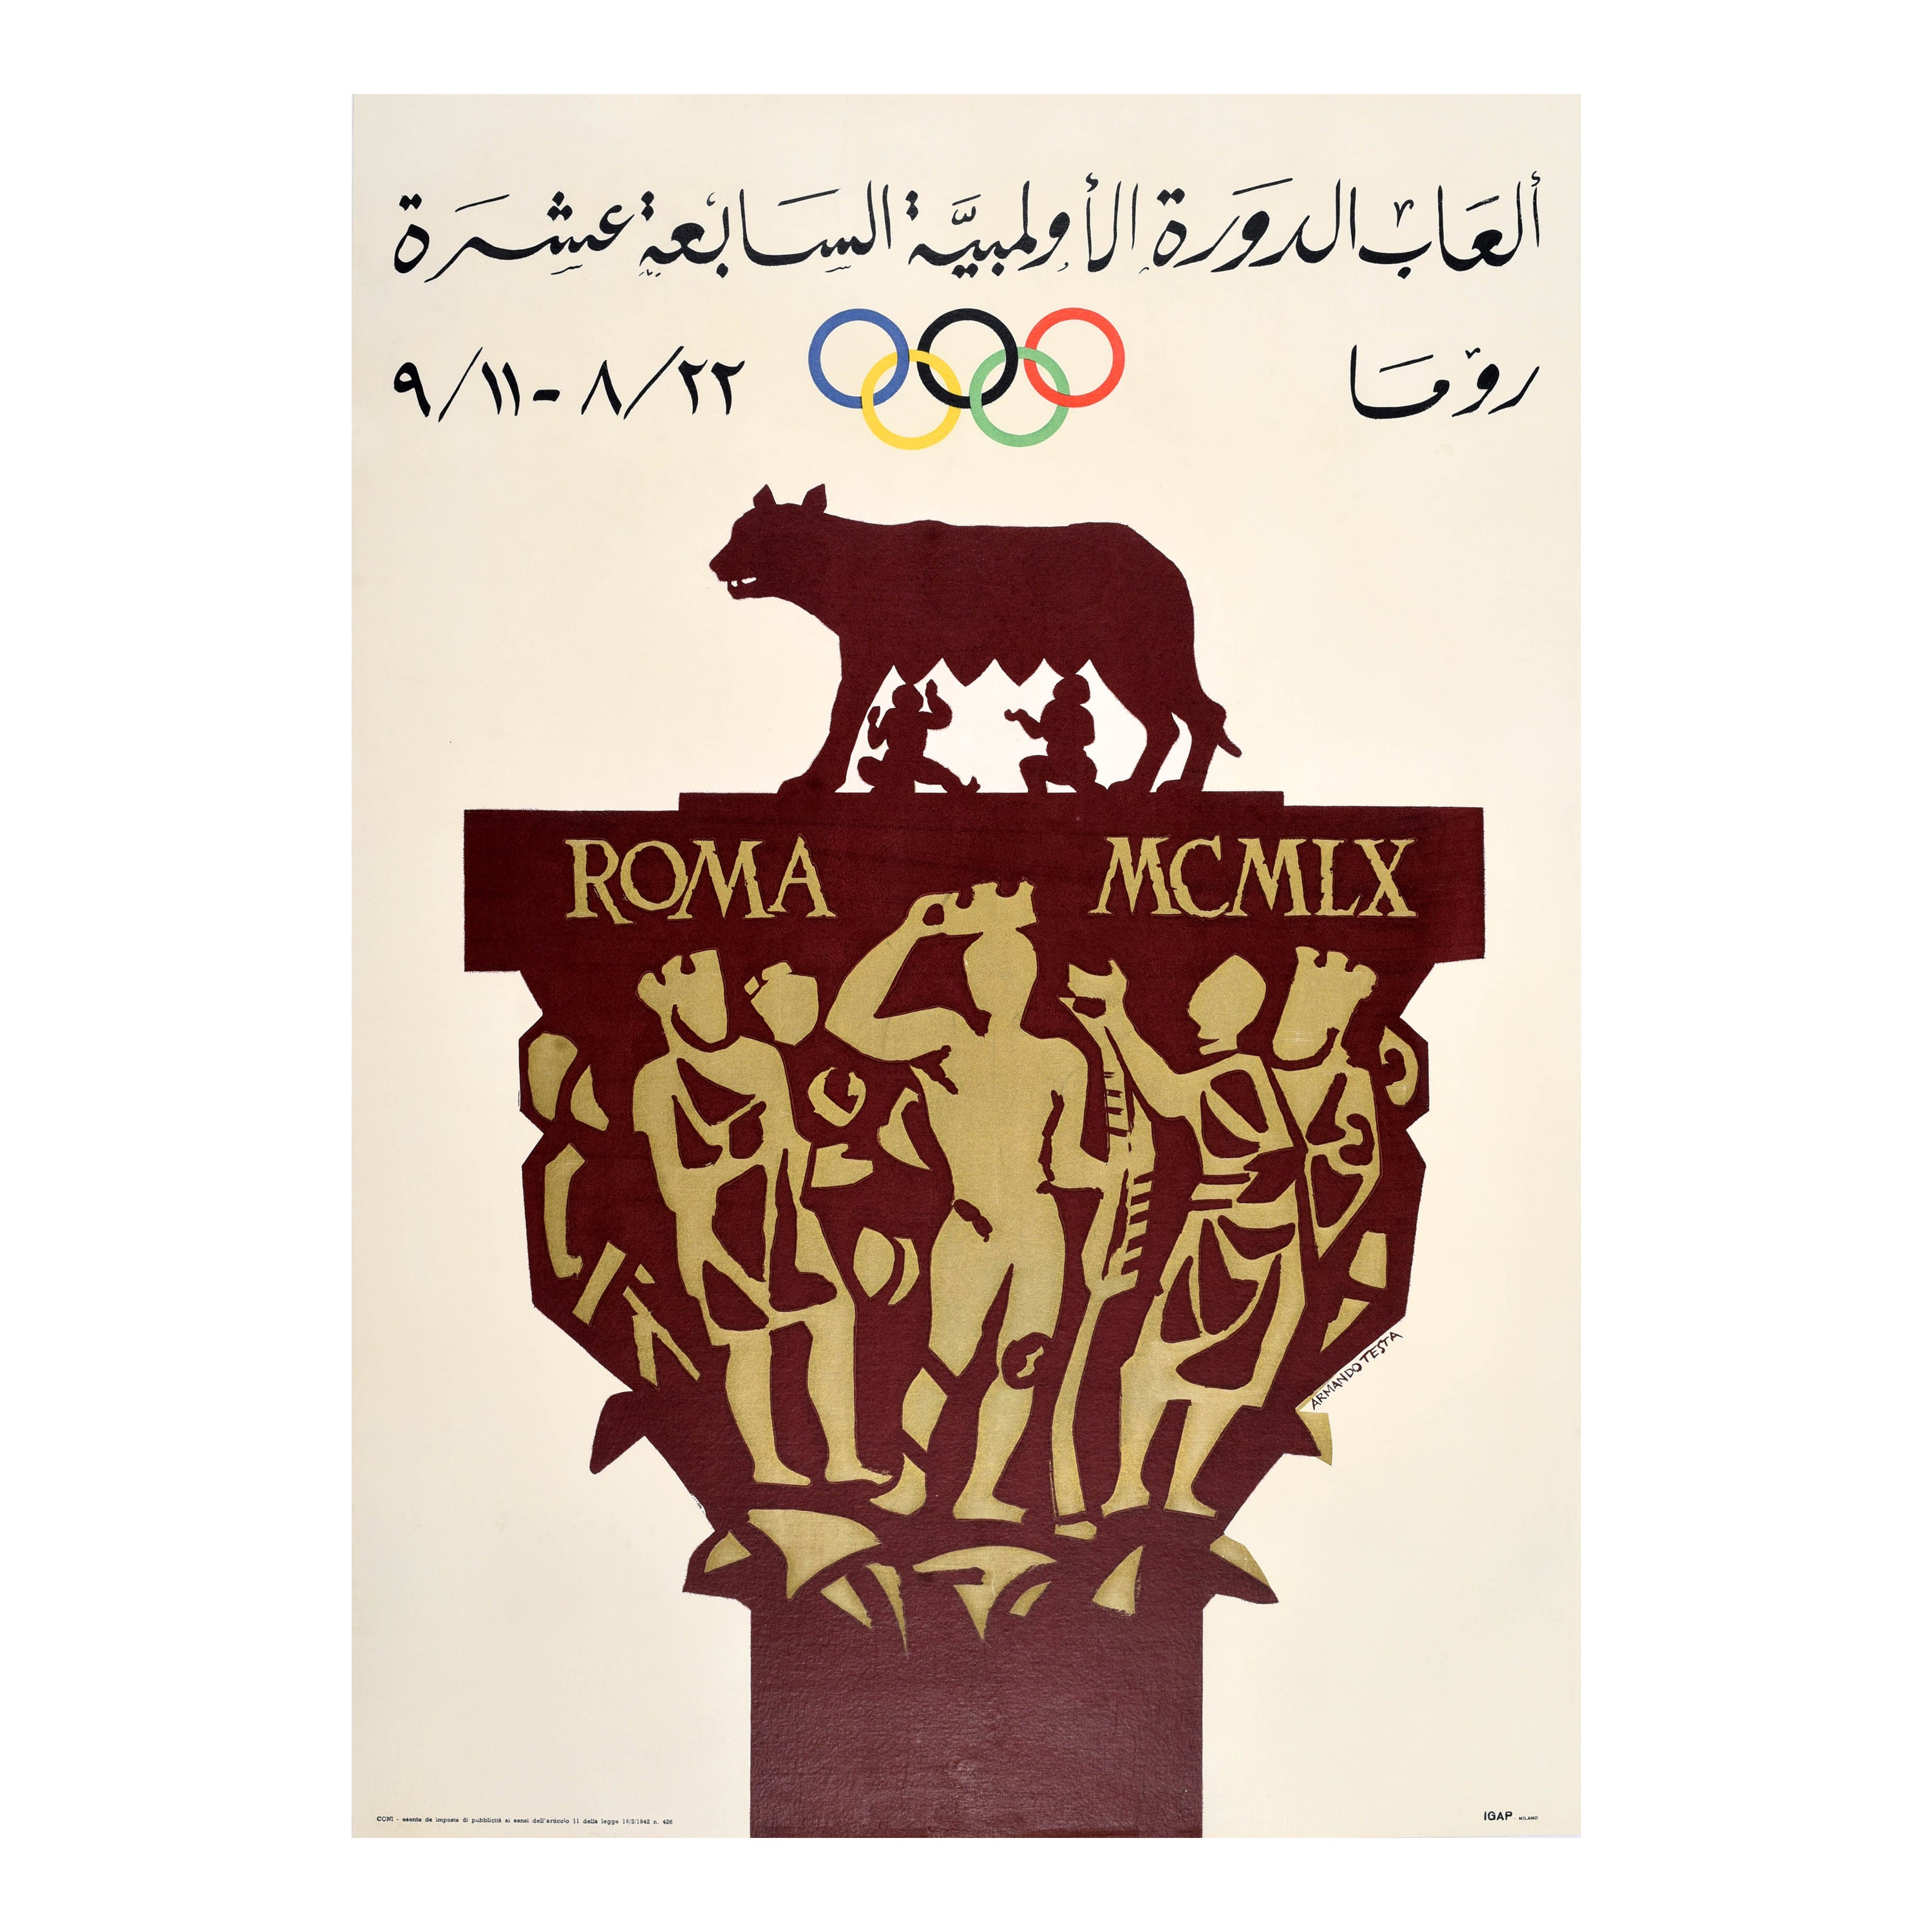 Rare affiche de sport originale des Jeux olympiques de Rome, Italie, Armando Testa arabe